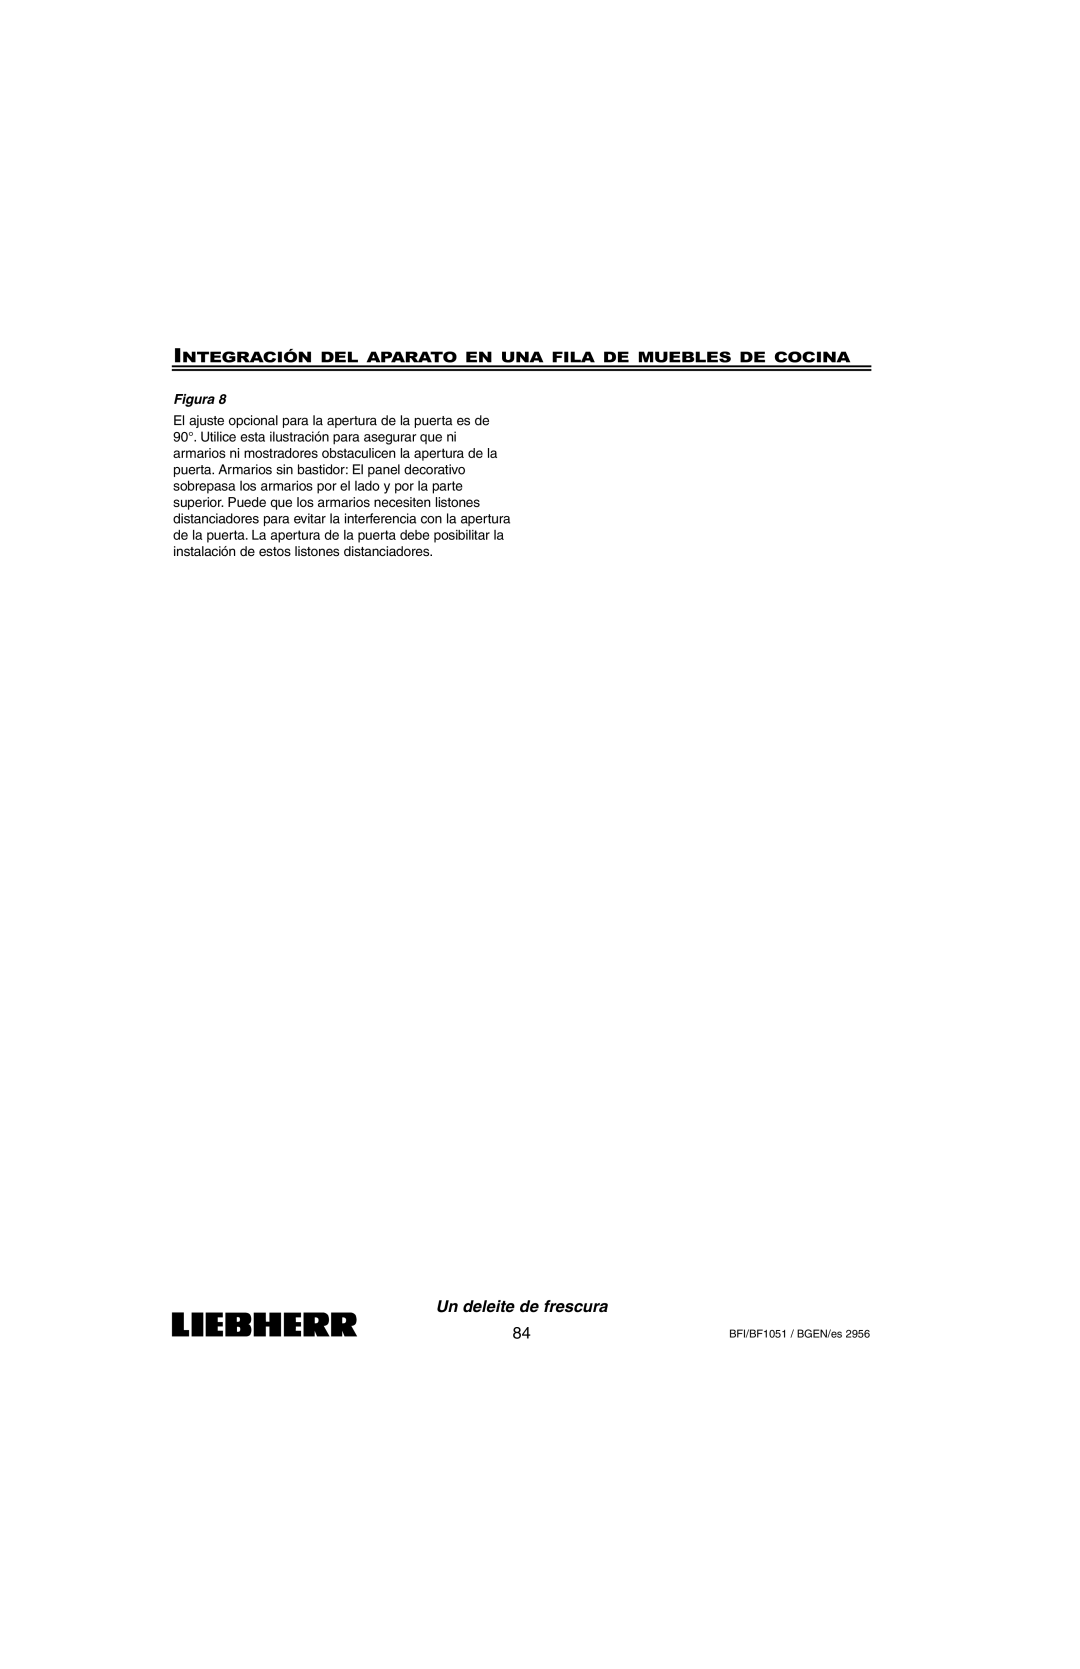 Liebherr BFI1051, BF1051 installation instructions Un deleite de frescura, Figura 